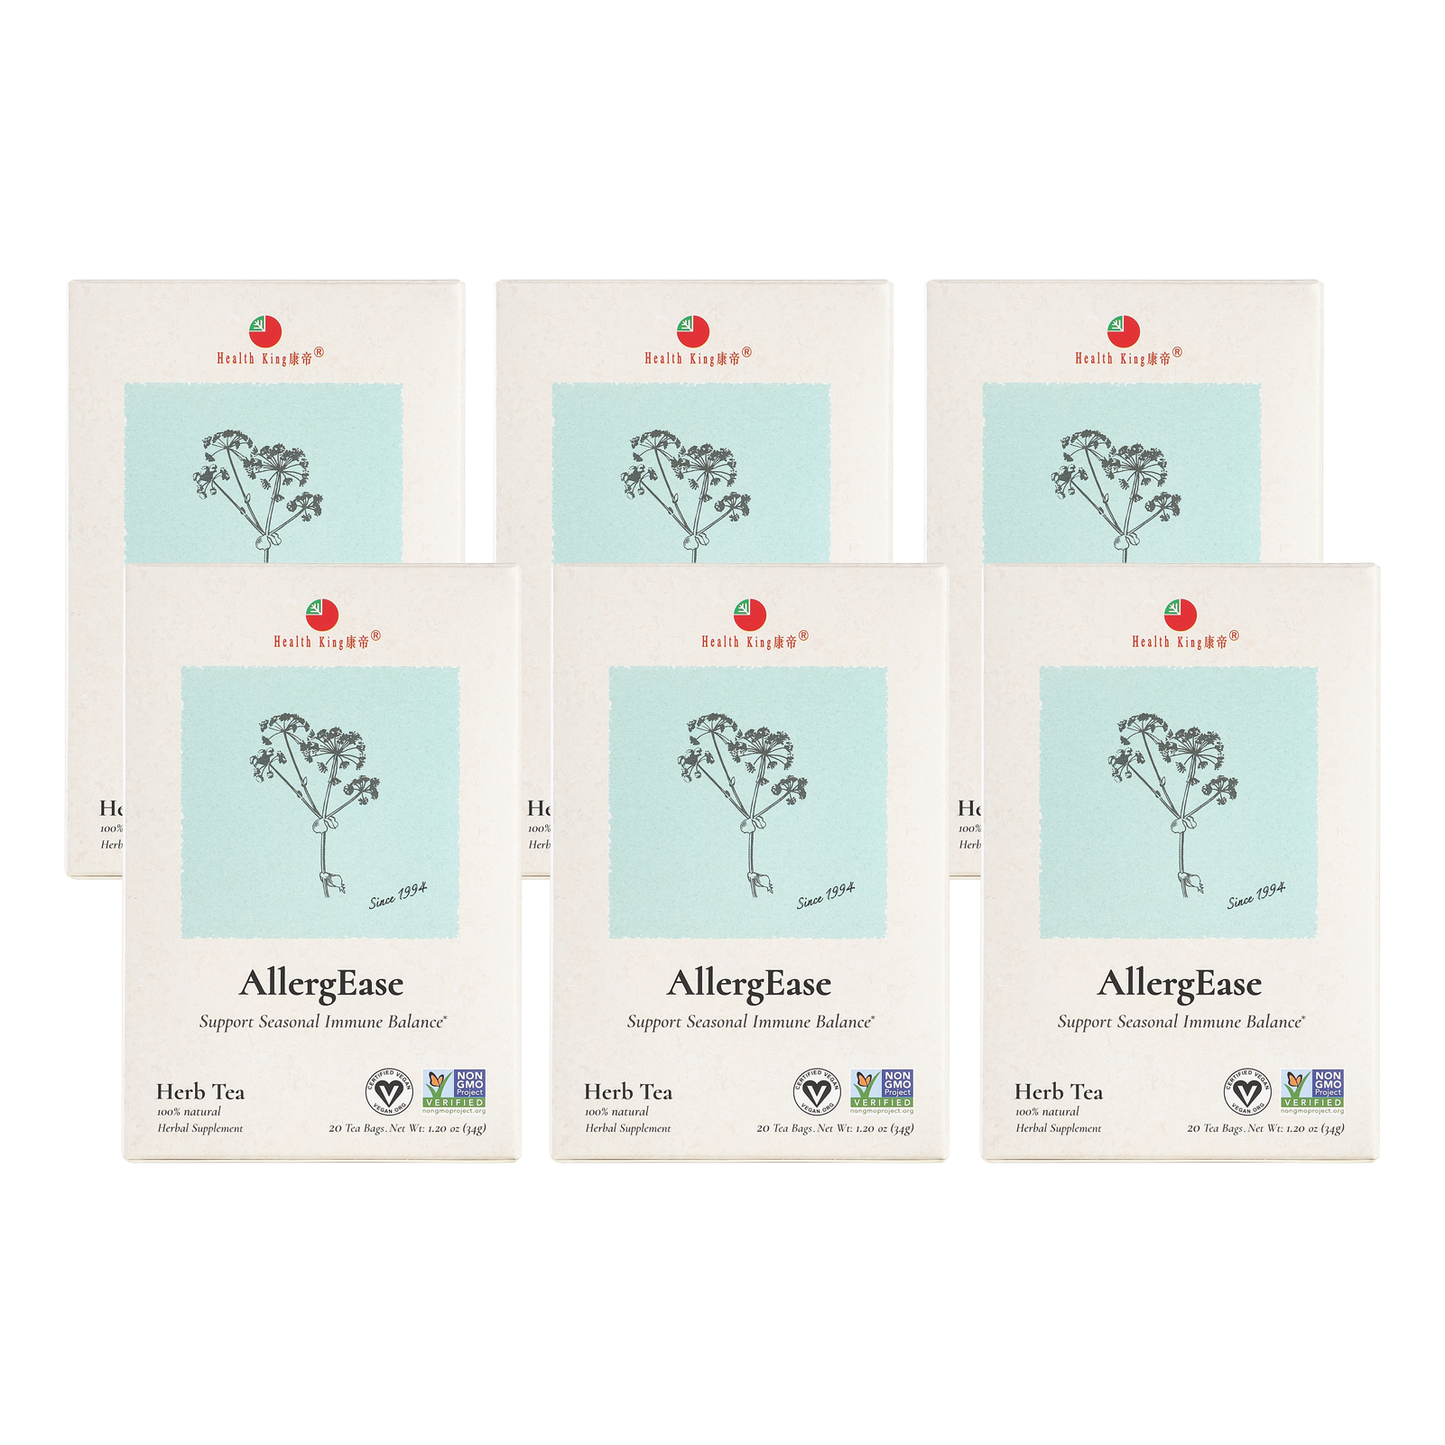 AllergEase Herb Tea with aloe vera ingredient, package of 6